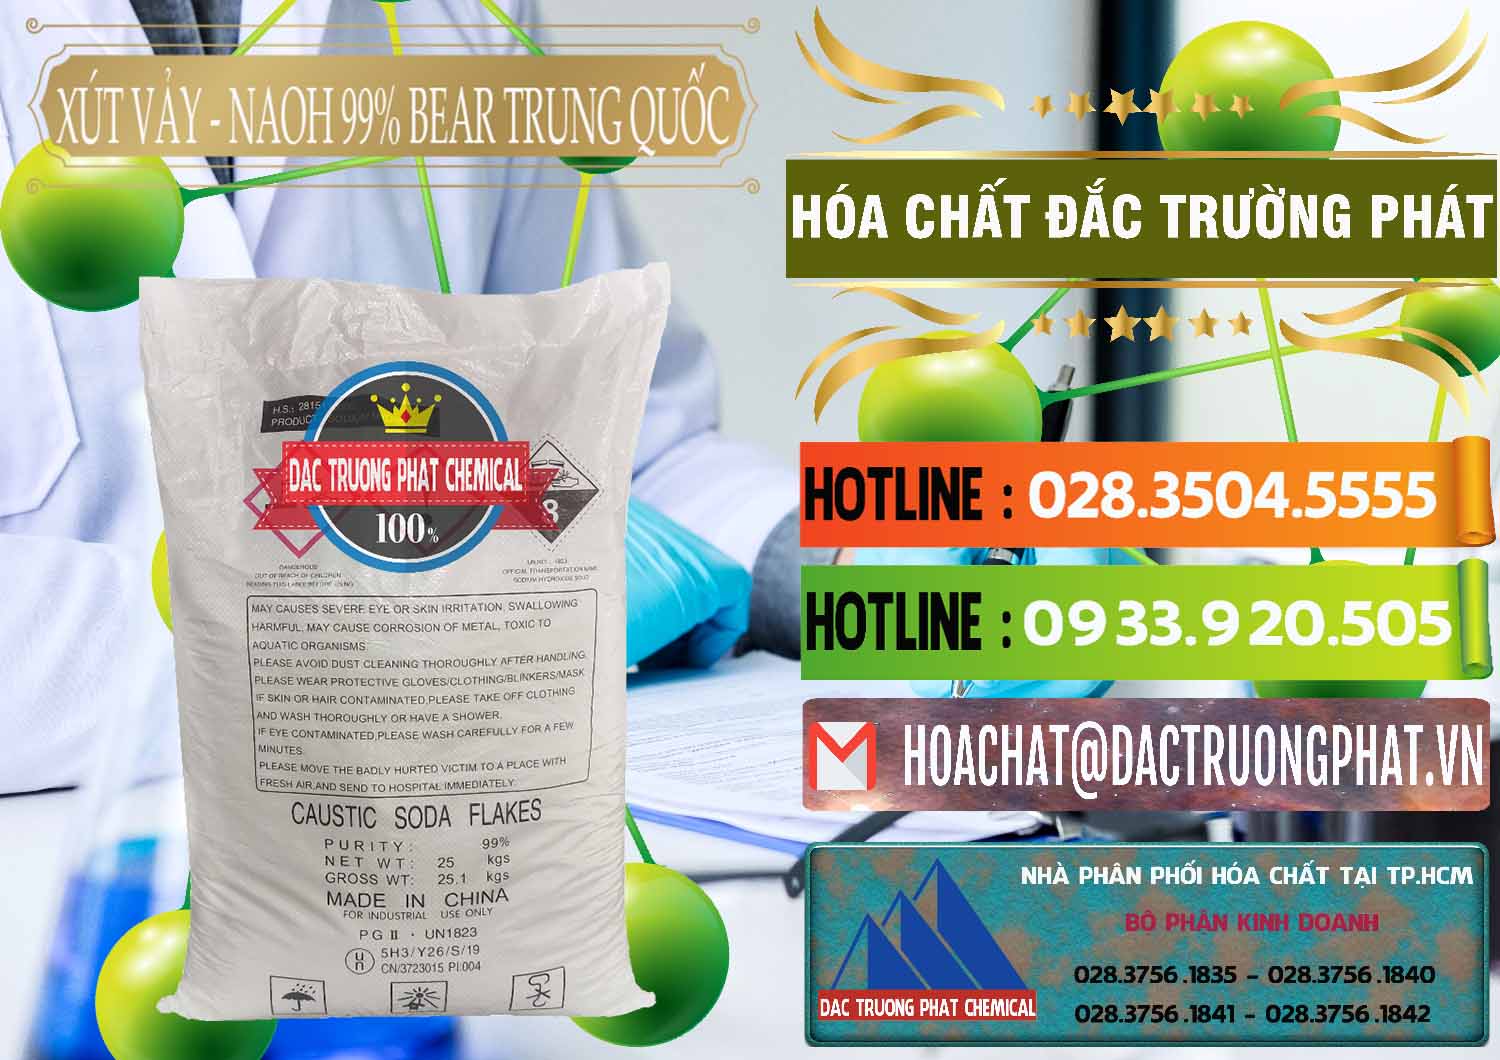 Bán _ cung cấp Xút Vảy - NaOH Vảy 99% Bear Sơn Đông Trung Quốc China - 0175 - Nơi phân phối - cung ứng hóa chất tại TP.HCM - cungcaphoachat.com.vn